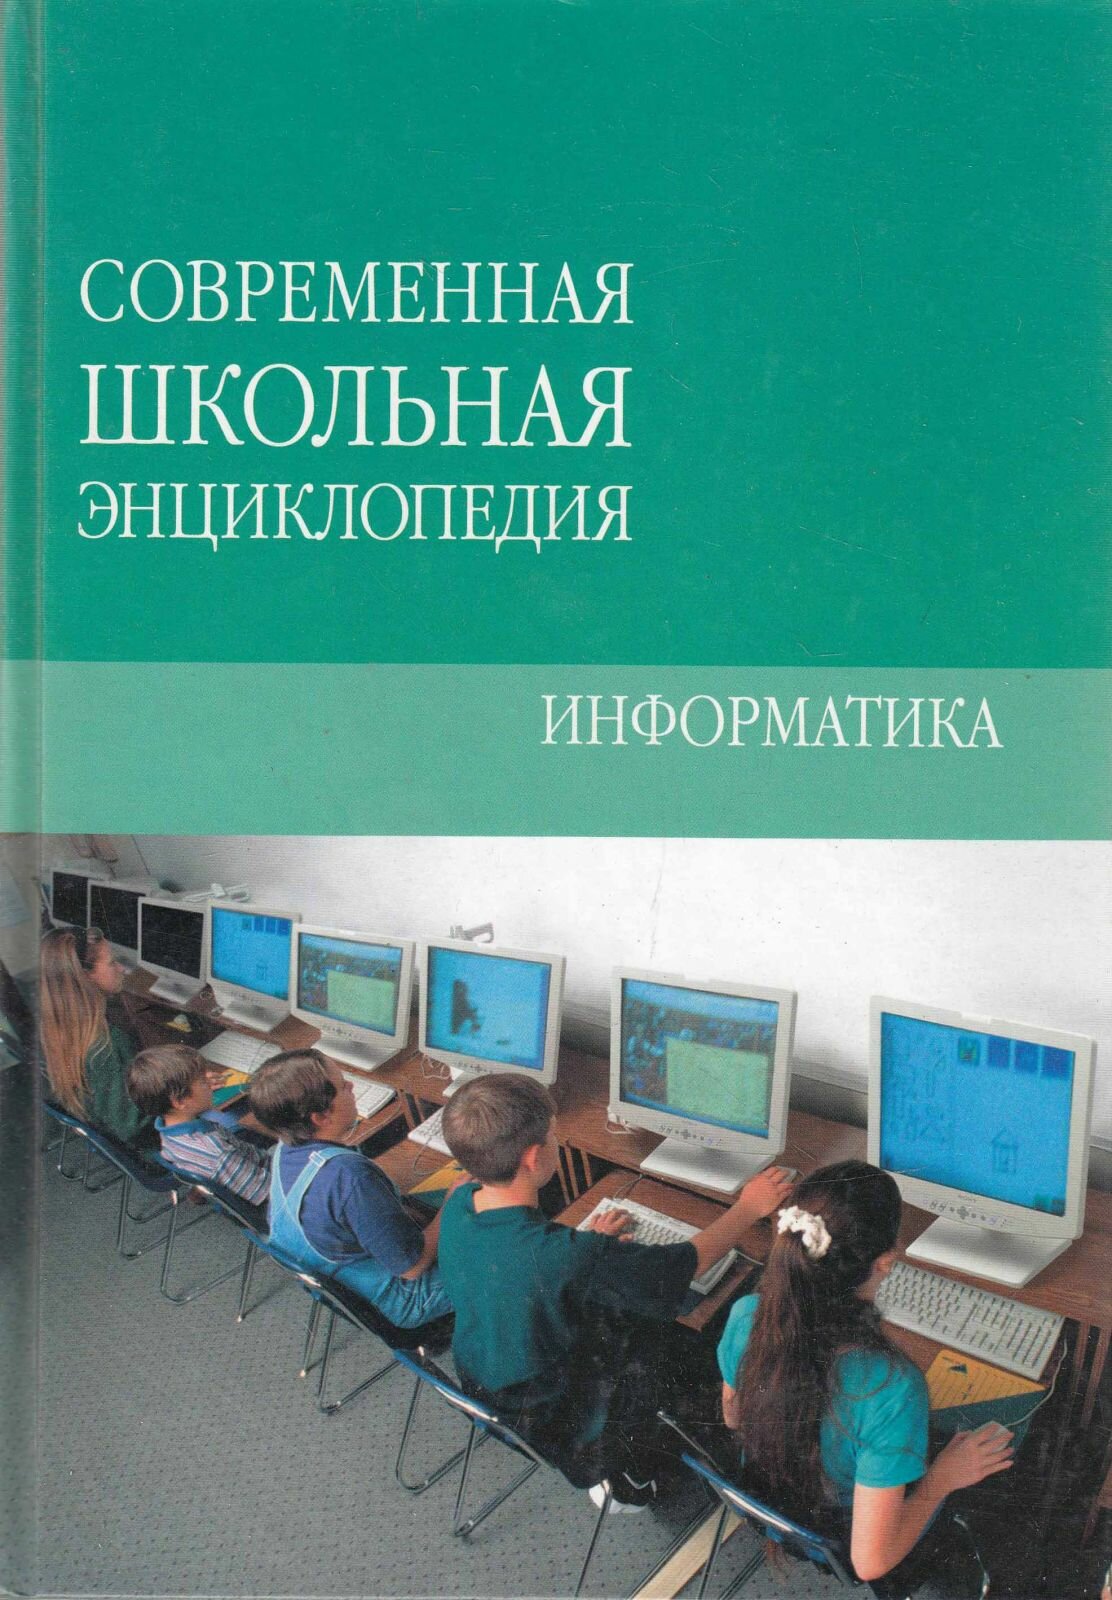 Книга "Информатика" М. Коляда Минск 2007 Твёрдая обл. 192 с. С цветными иллюстрациями